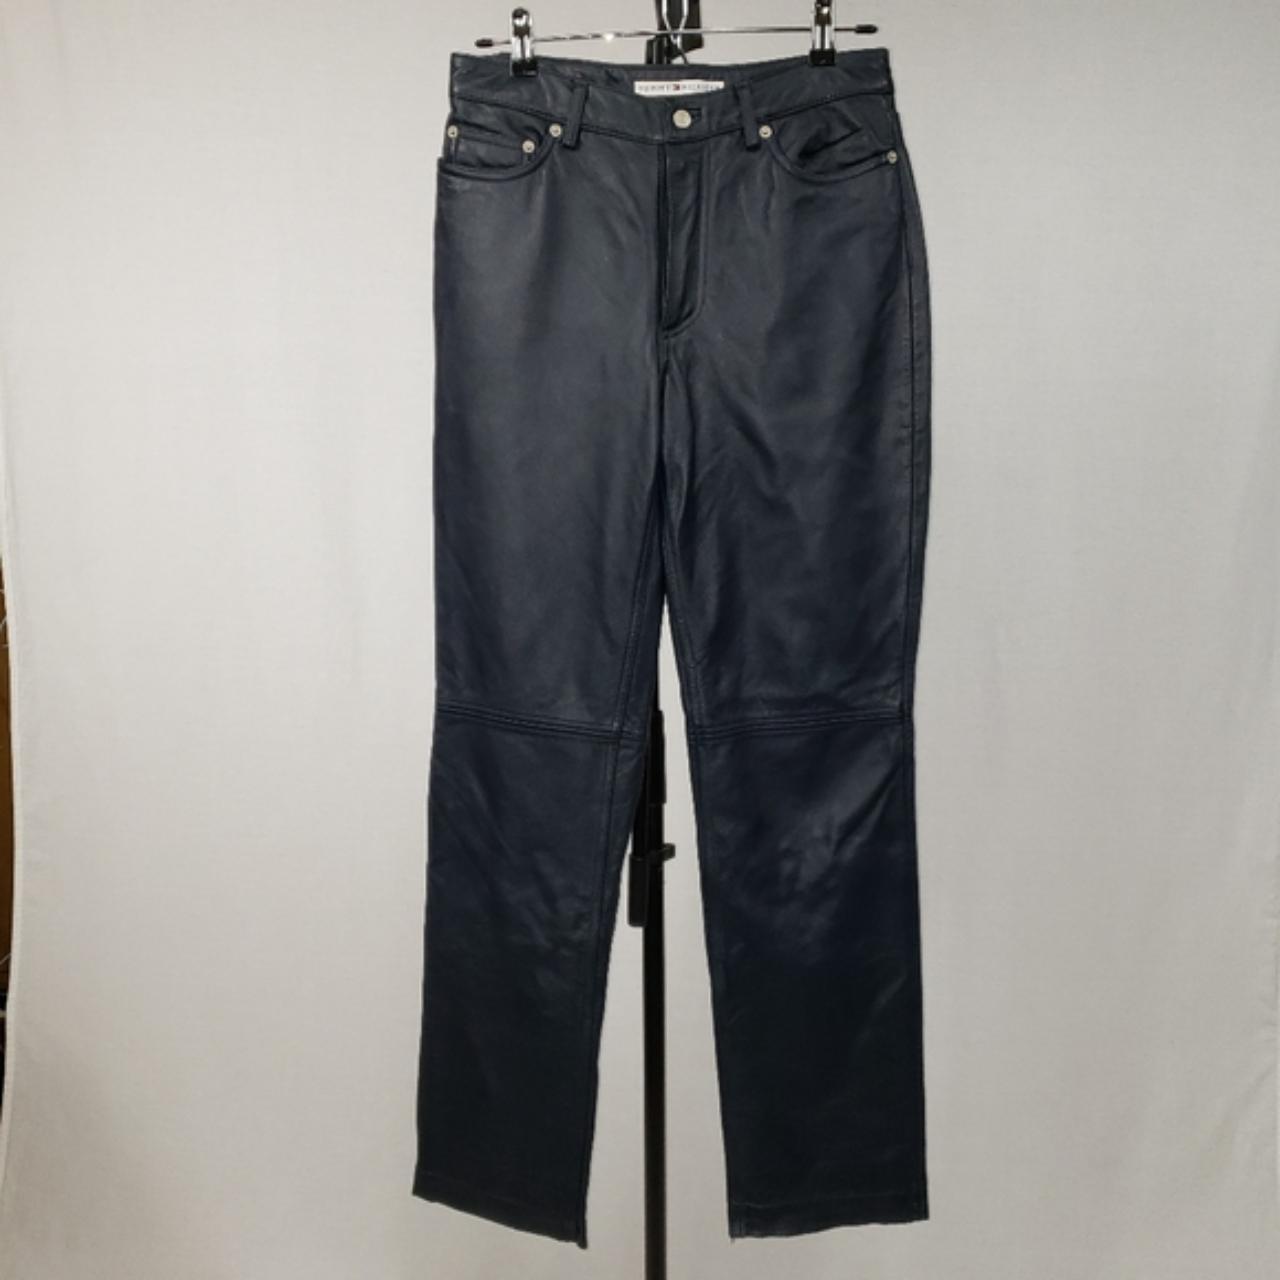 Soft Tommy Hilfiger 5 pocket, dark blue leather... - Depop